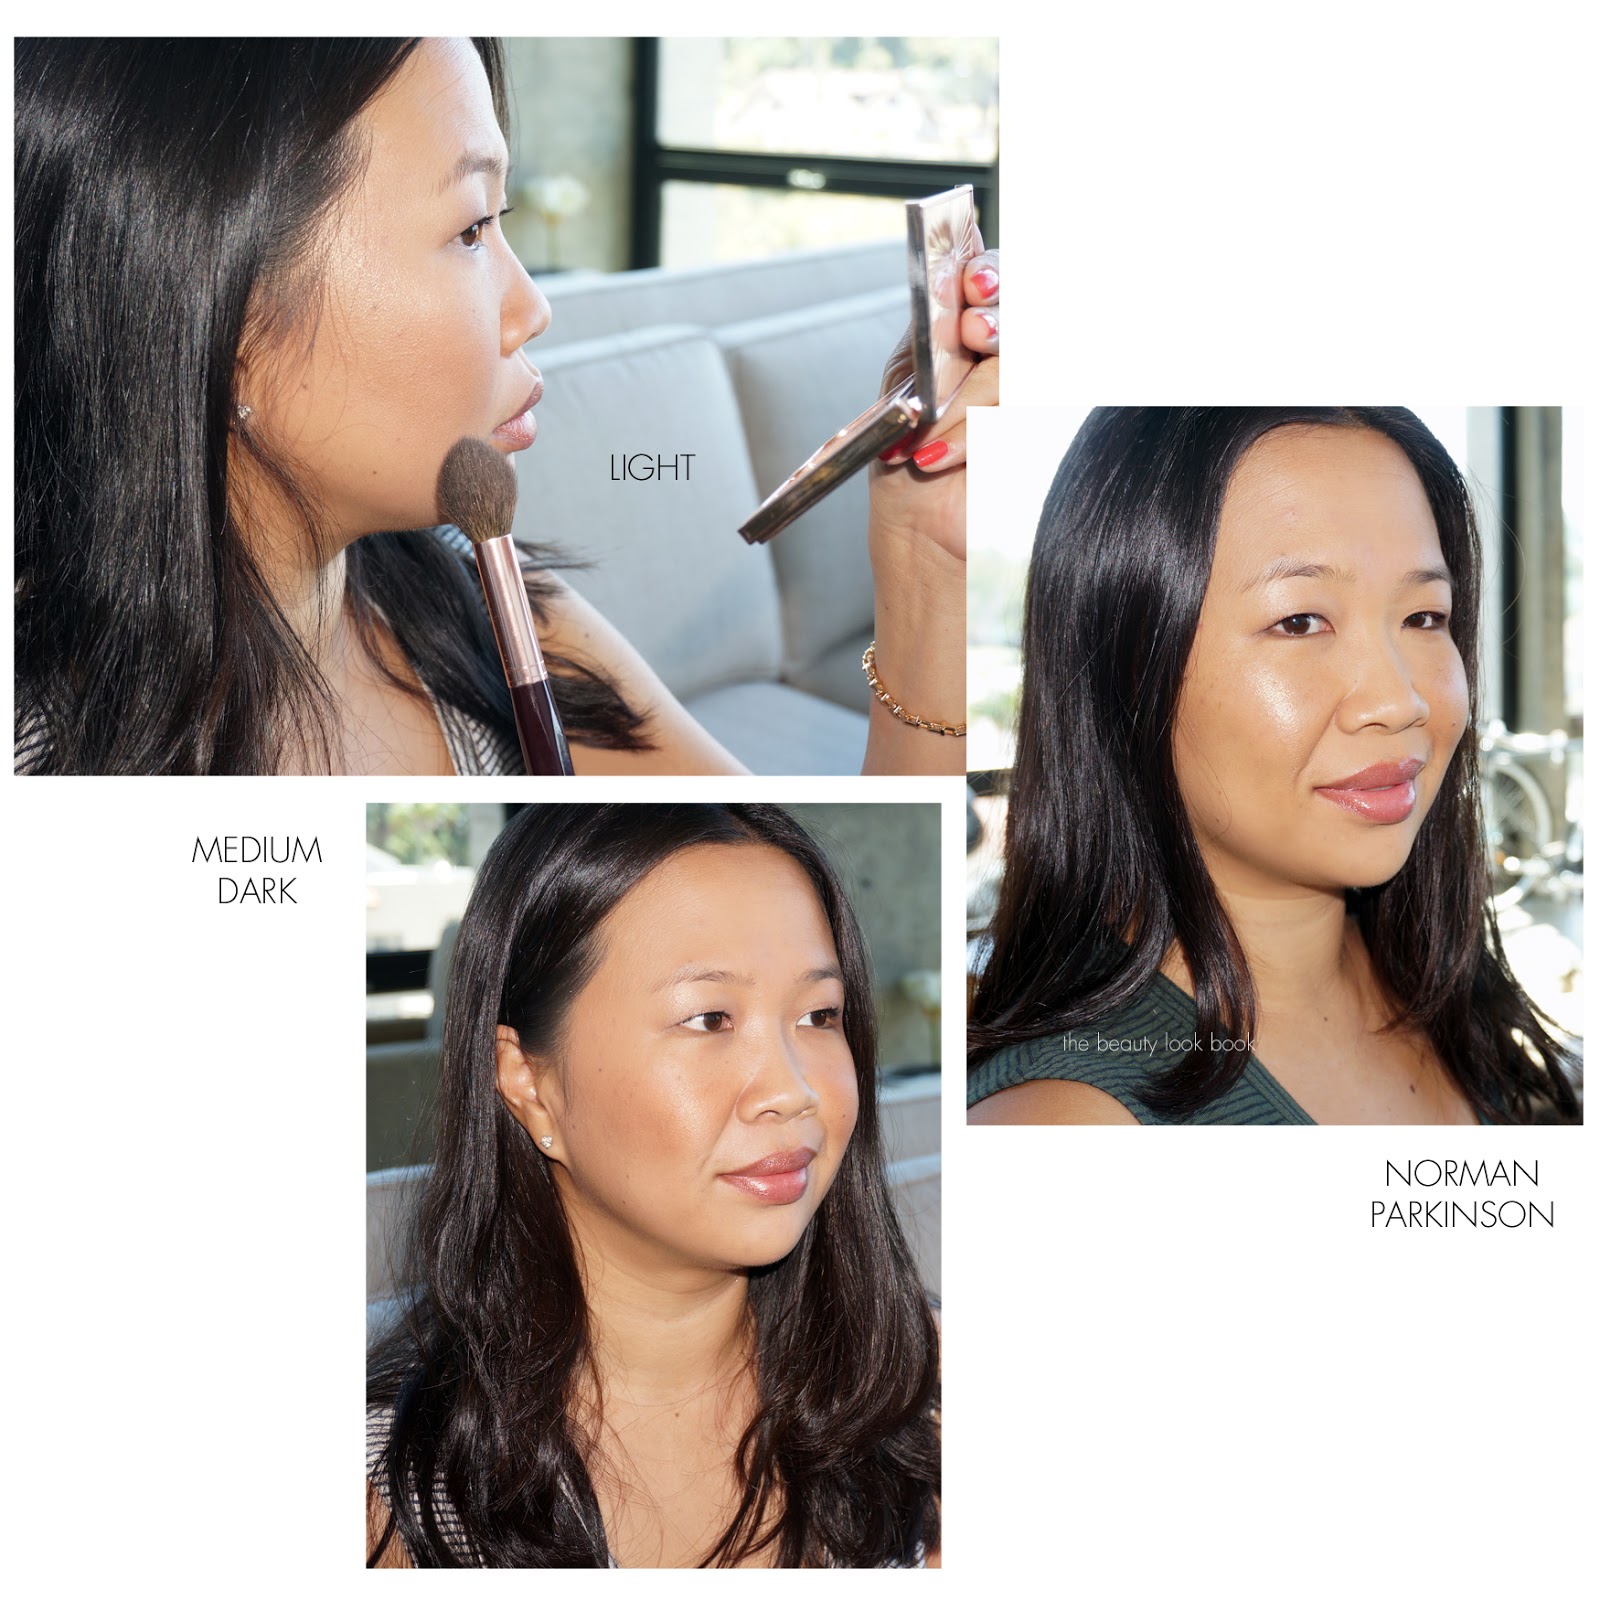 CHANEL Soleil Tan de Chanel - 4 Facettes Bronzing Powder - Reviews